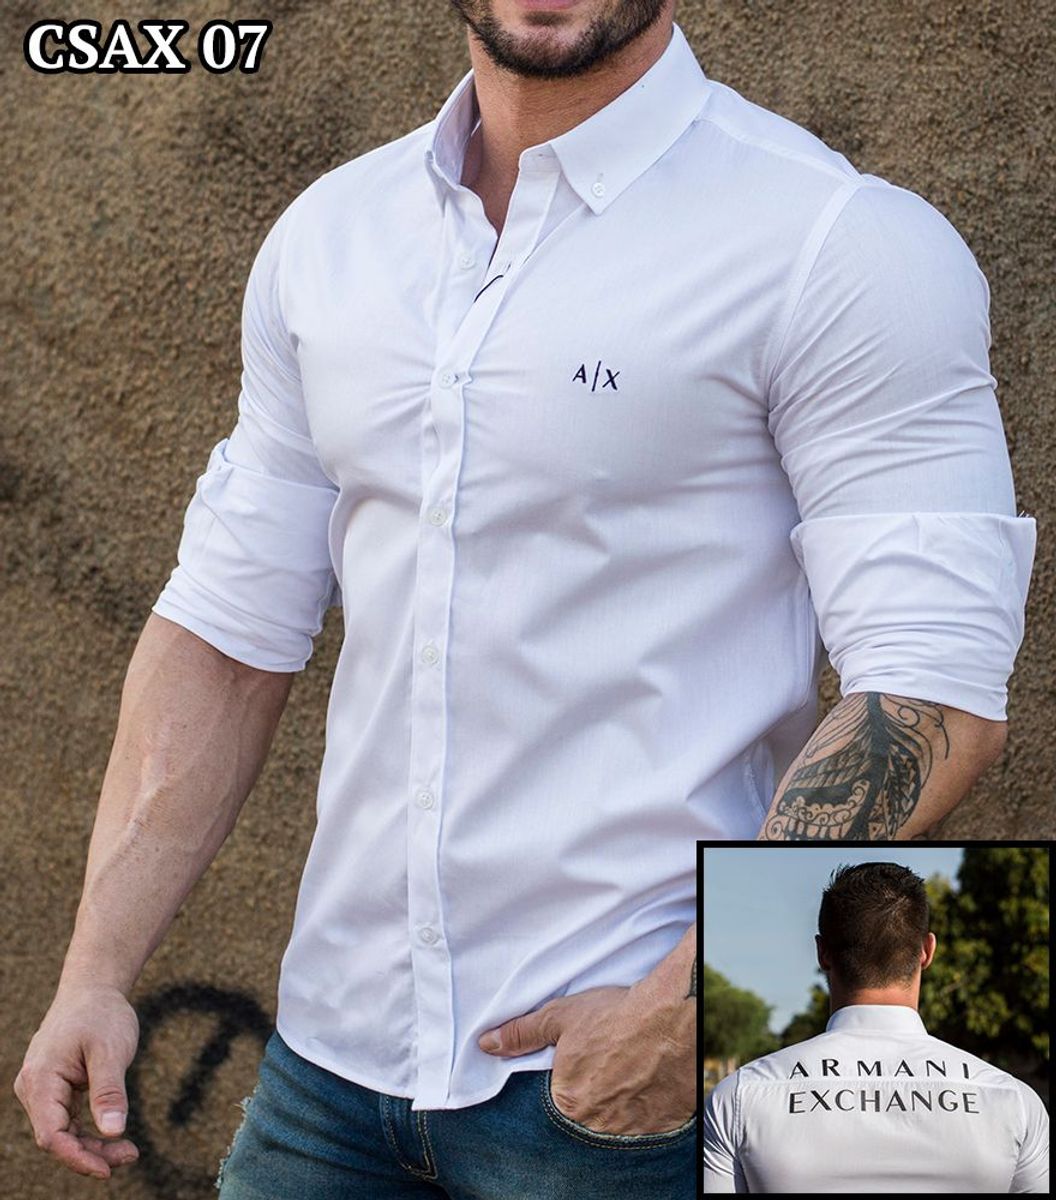 camisa social armani masculina